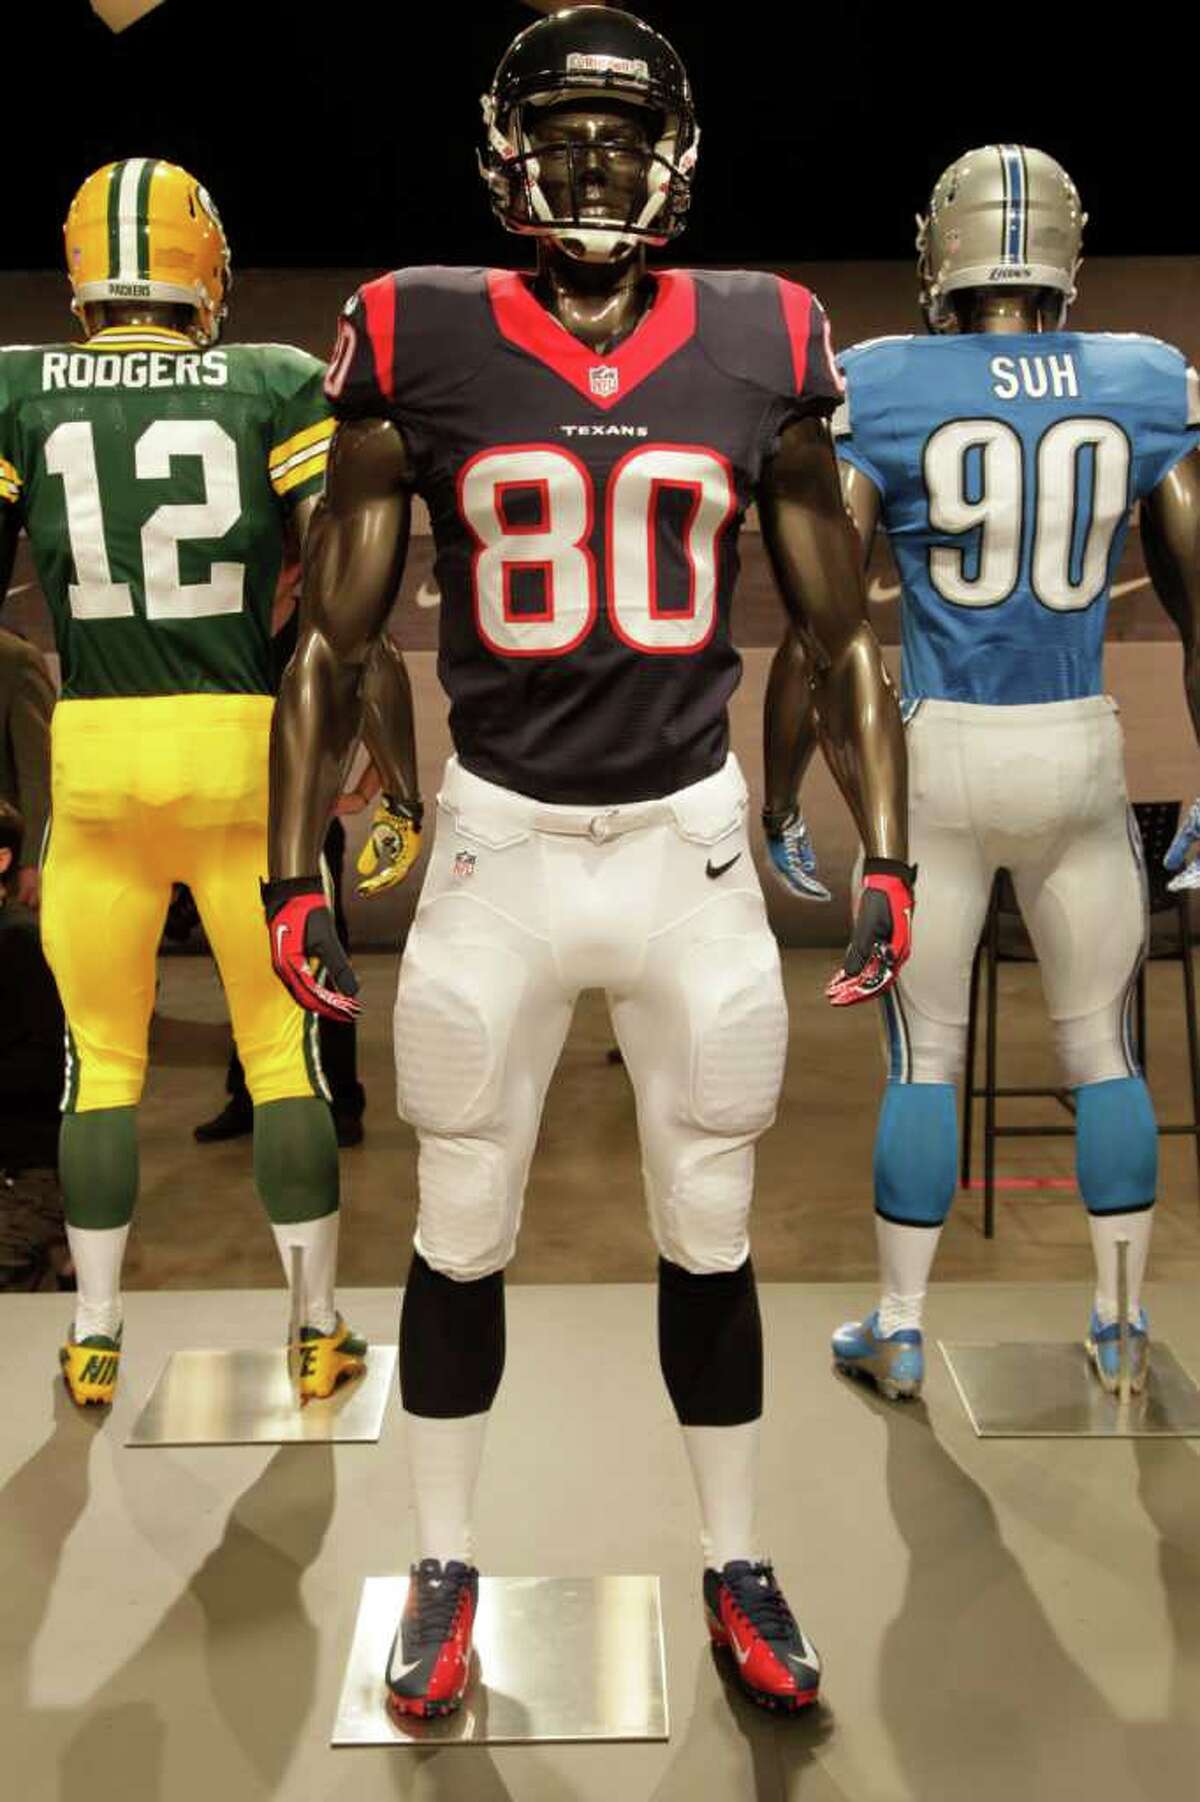 New Nike uniforms offer sleeker feel for Texans, NFL